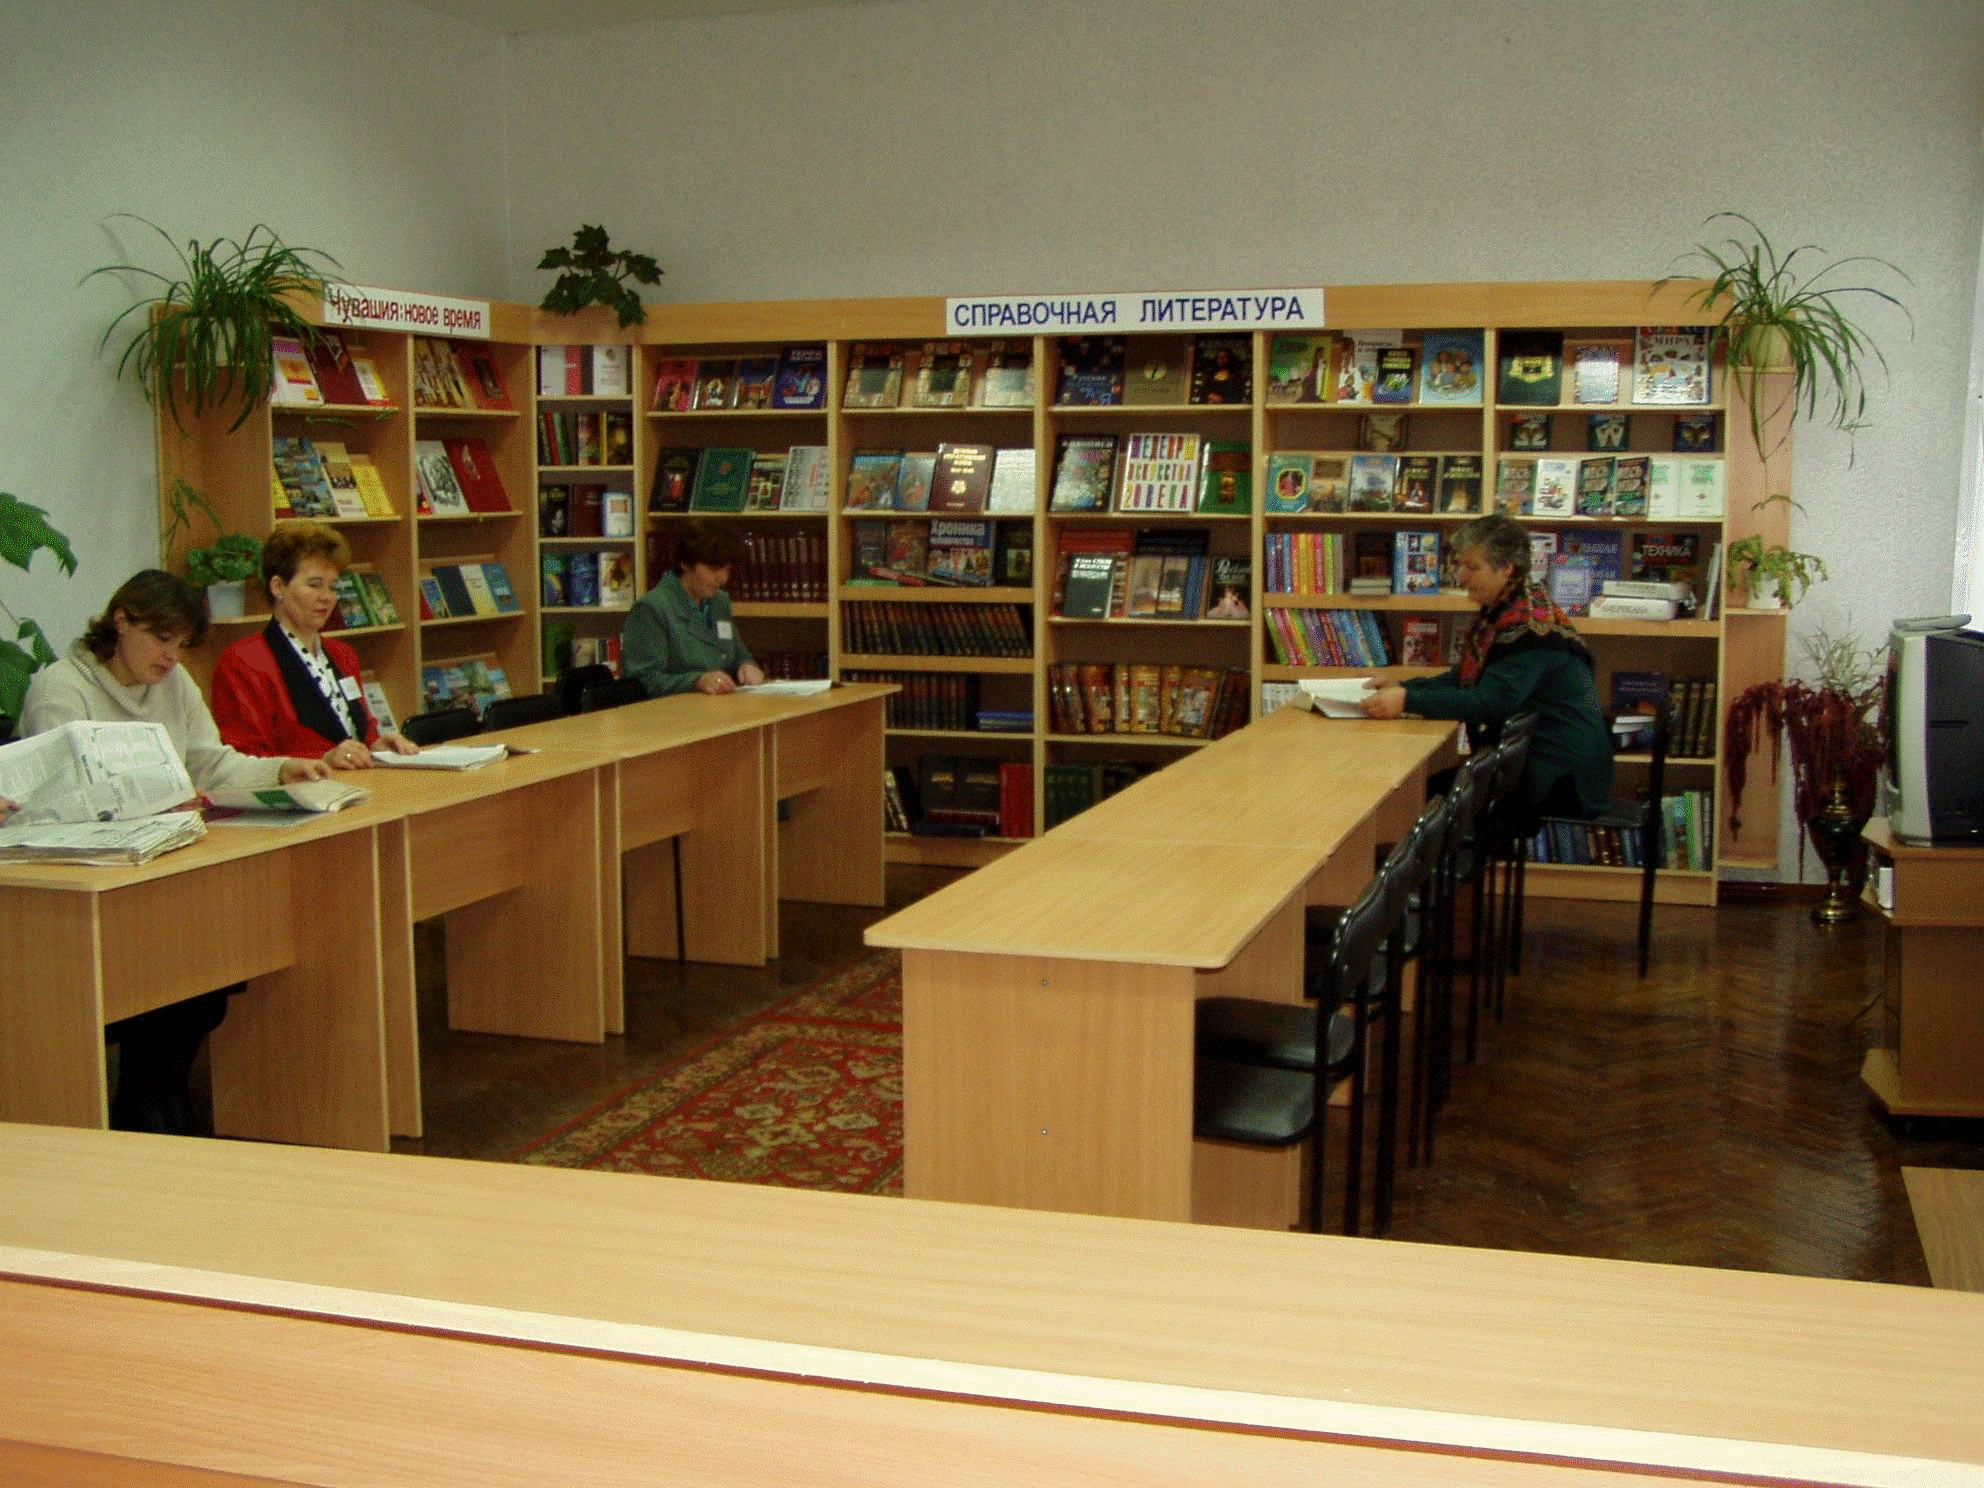 Библиотека центр информации